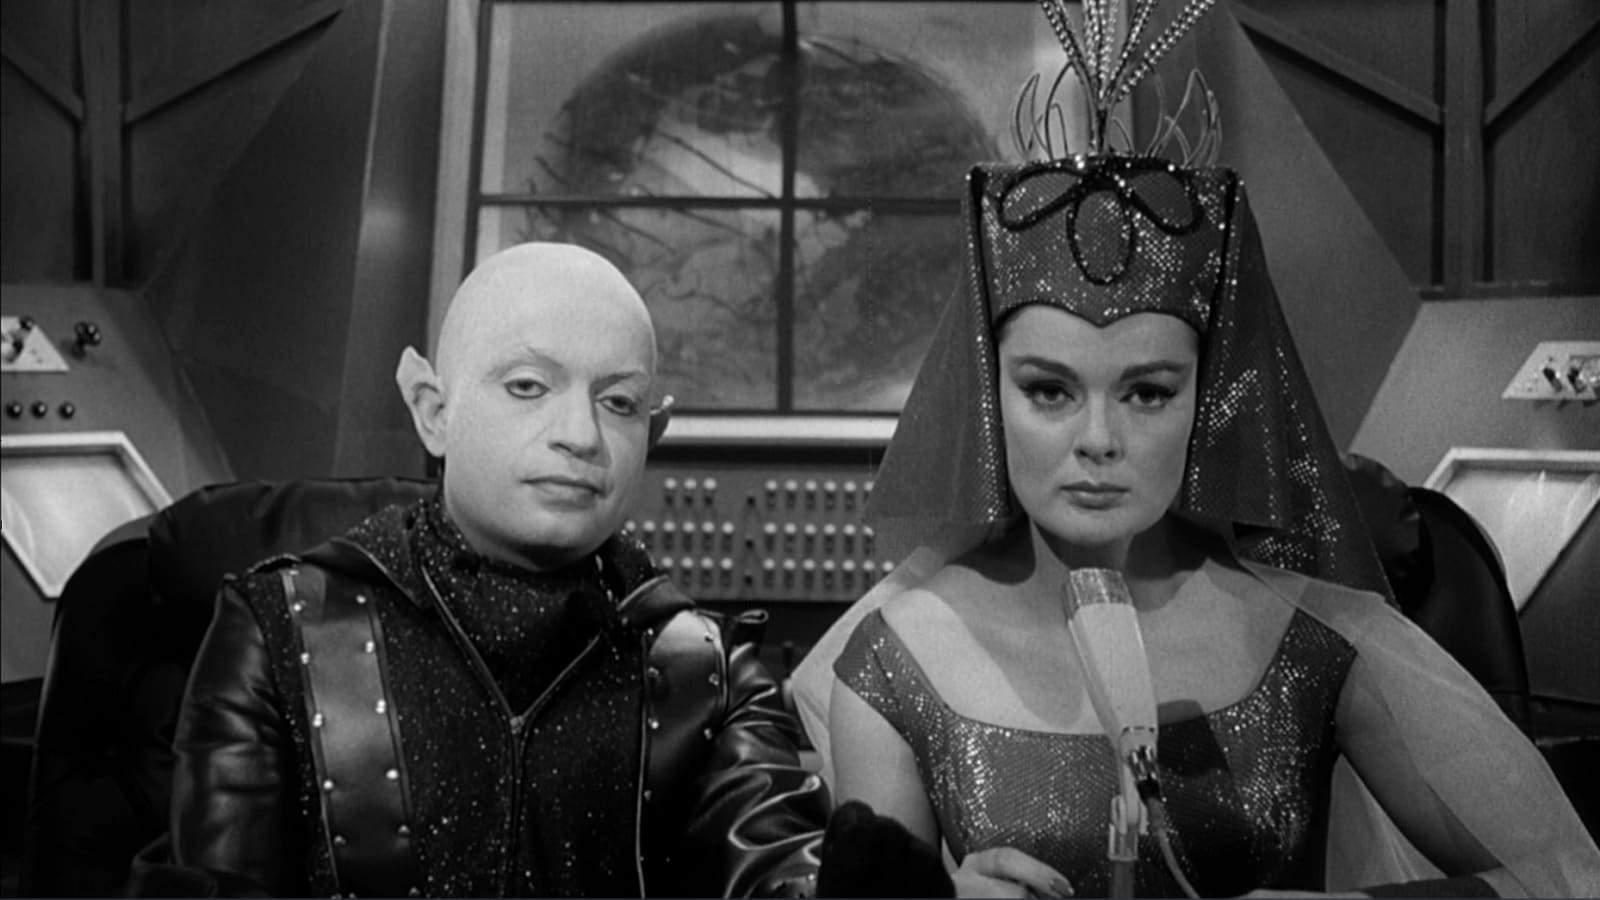 Frankenstein contre le monstre de l'espace (1965)